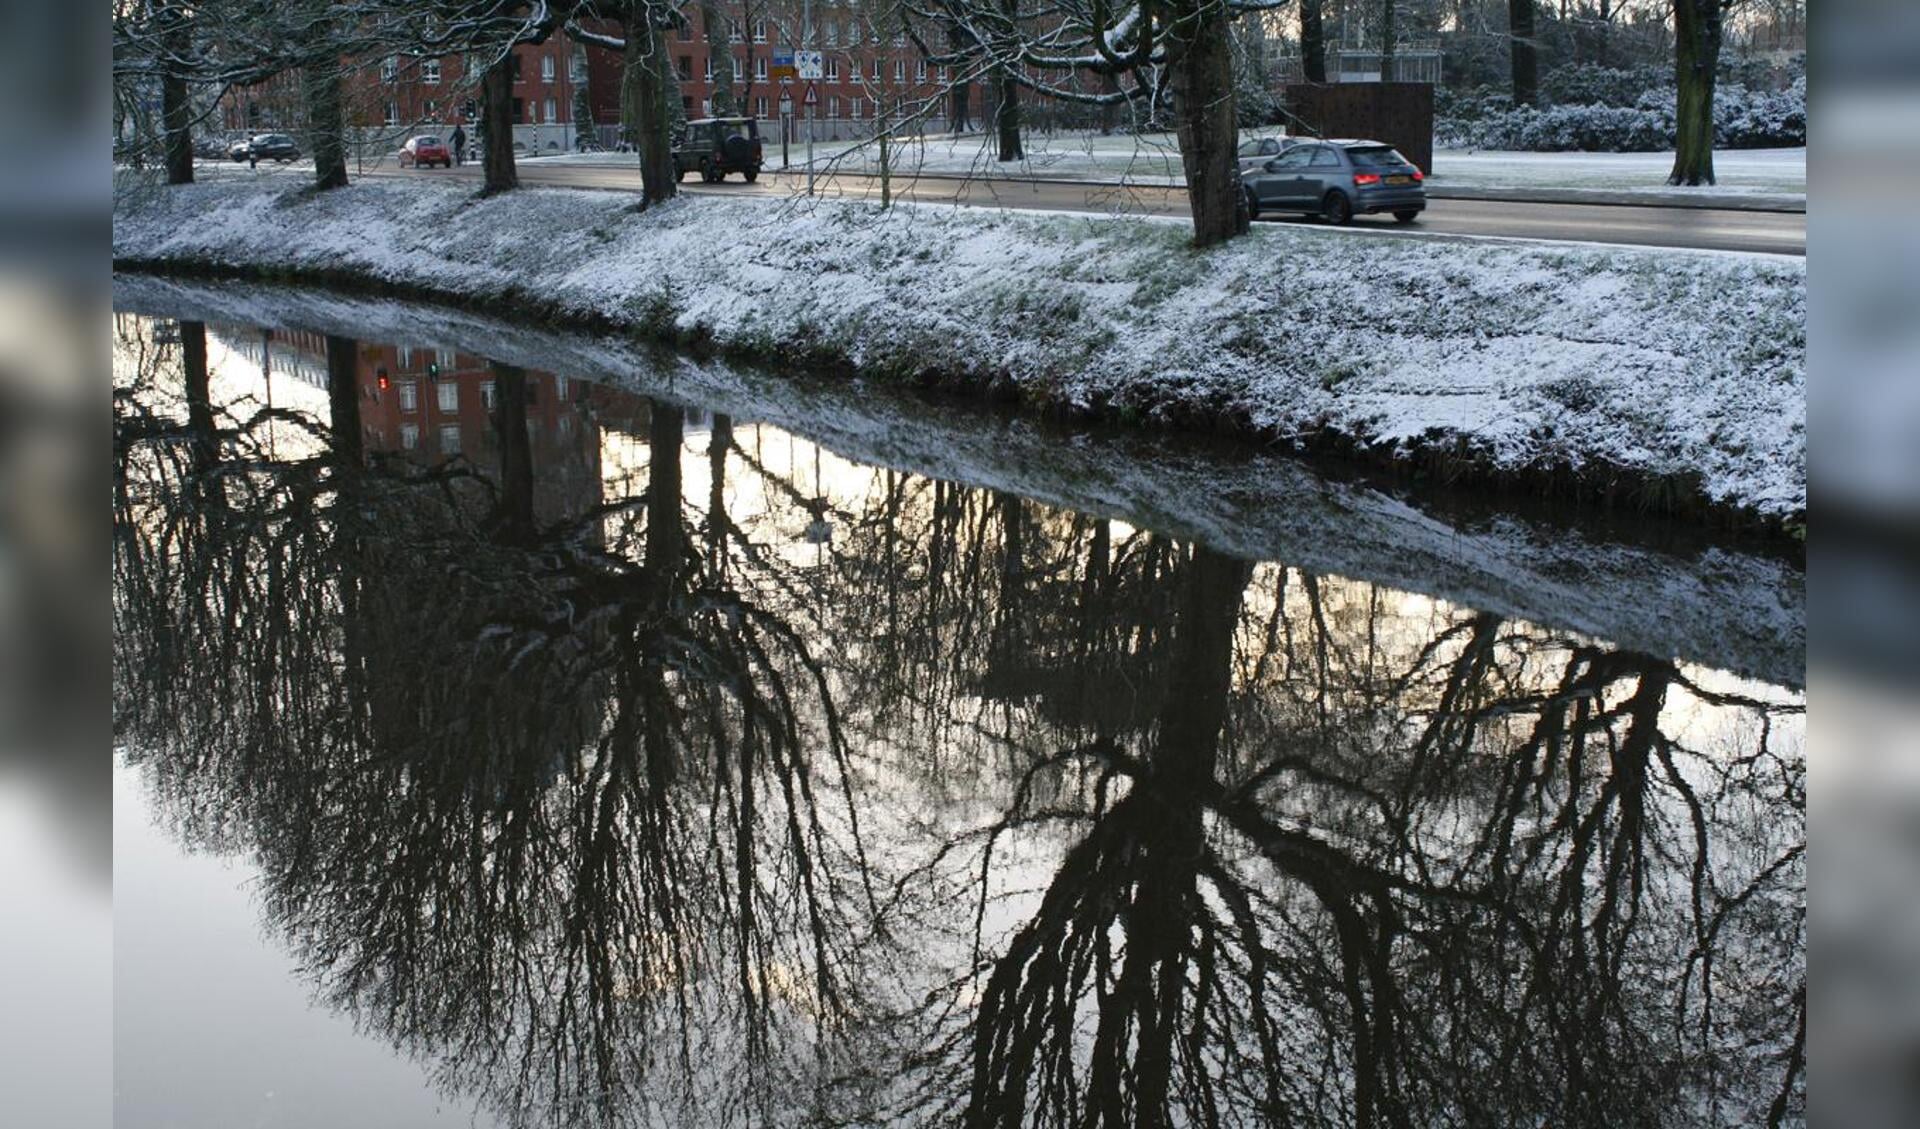 Op 6 december viel er behoorlijk wat sneeuw in Breda. Een korte fotoserie uit het Park Valkenberg. Foto Pepijn Nagtzaam